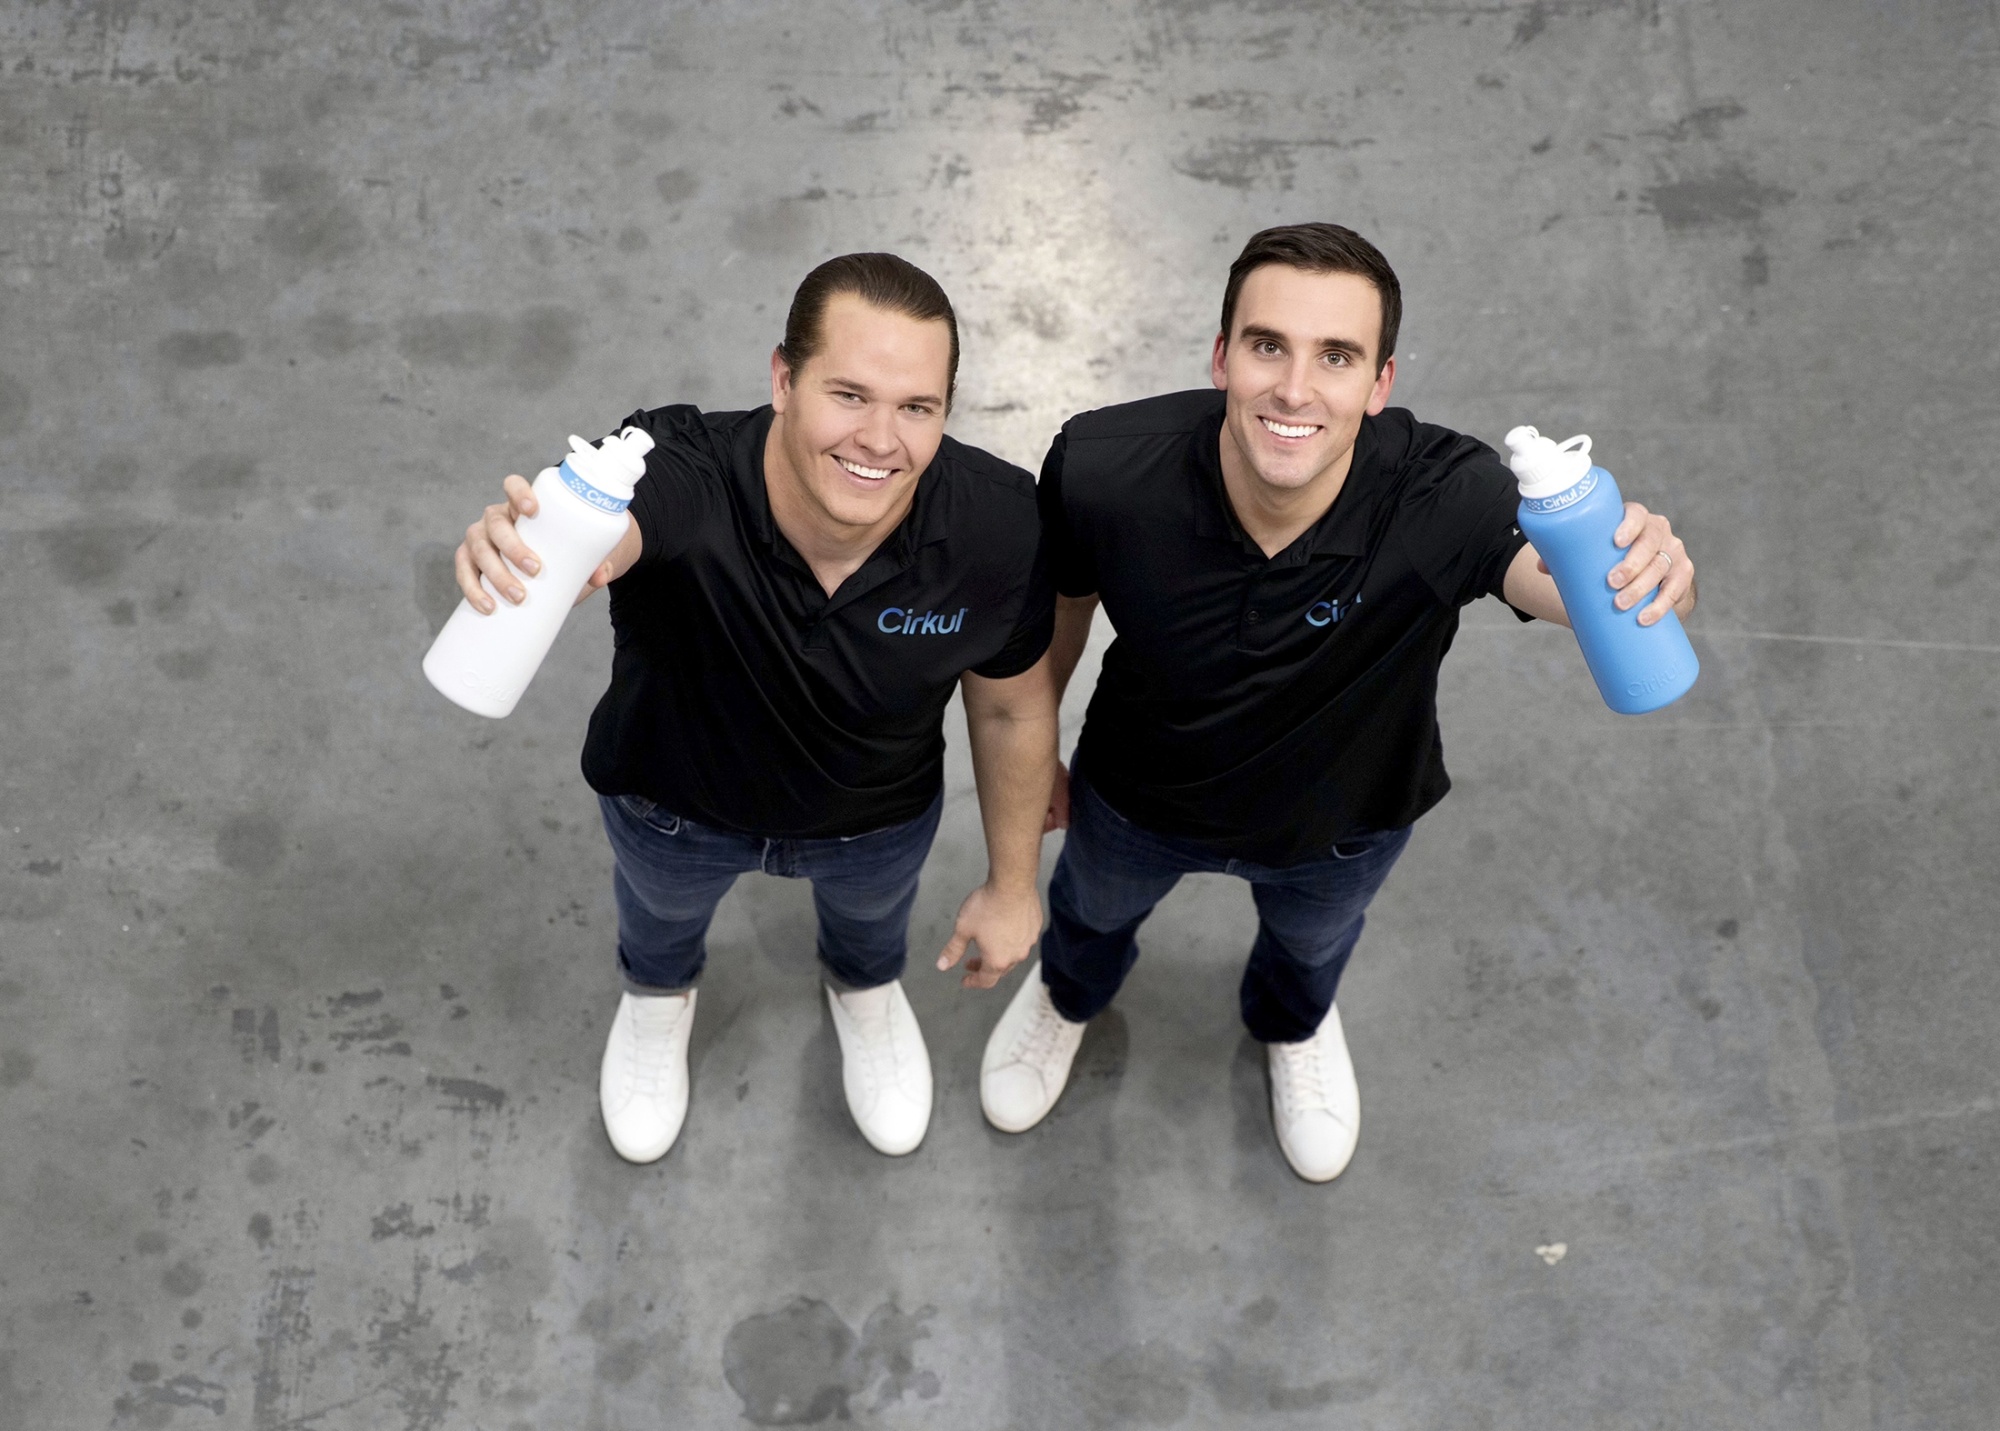 Cirkul Flavored-Water Bottle Startup Valued at $1 Billion